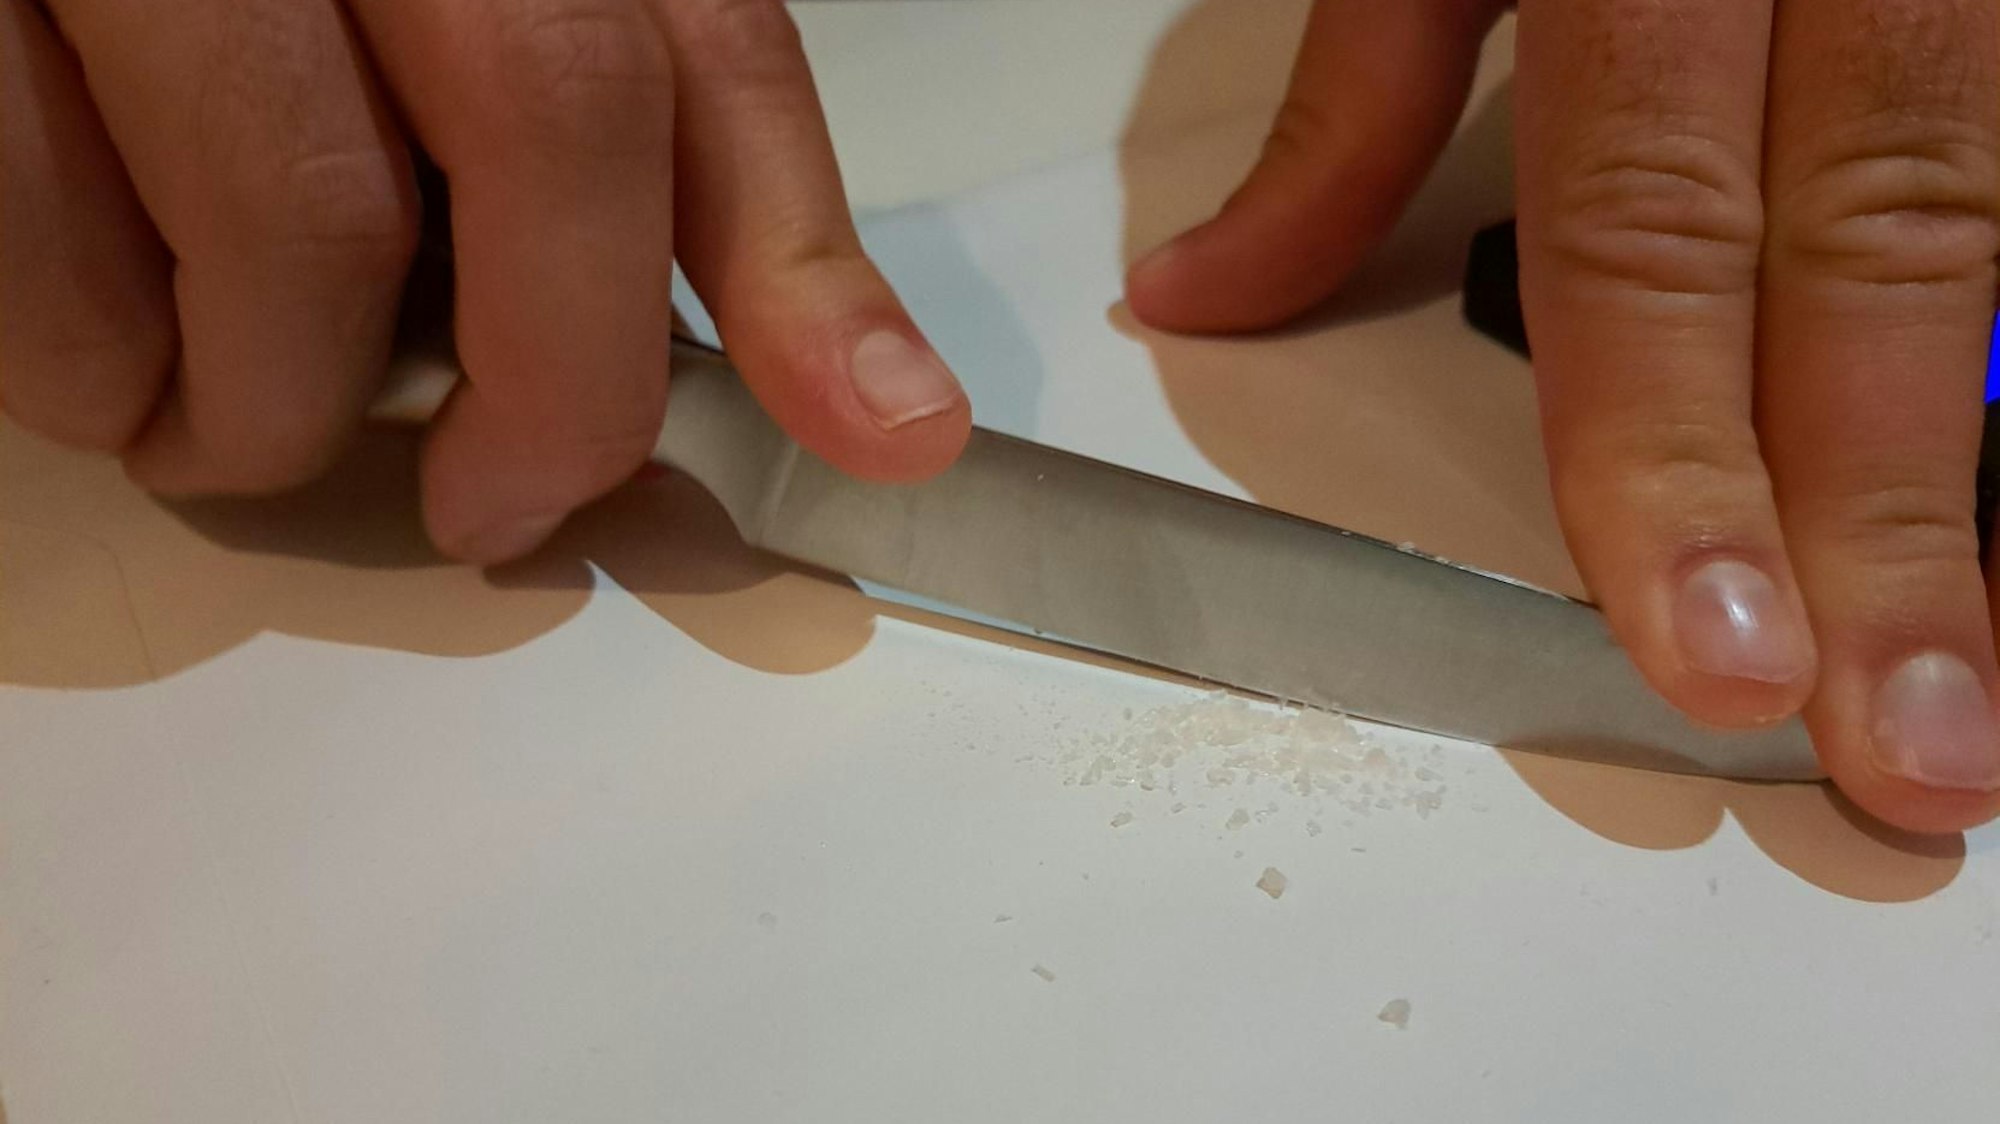 Hannes. S. zerkleinert die MDMA-Kristalle mit einem Küchenmesser.